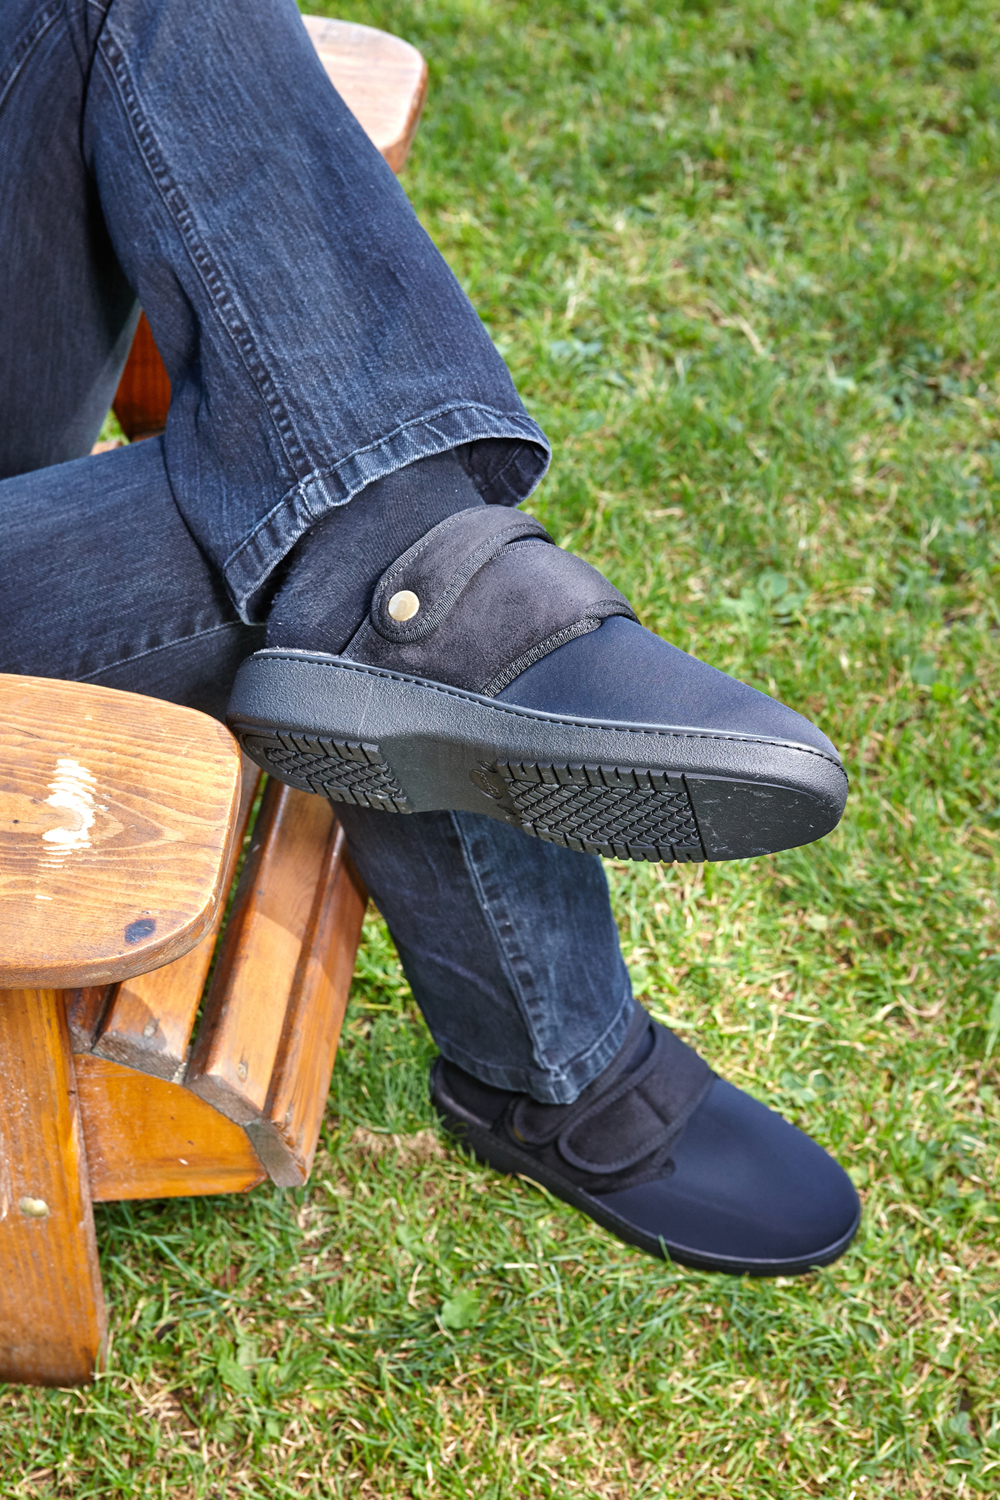 La chaussure confort Promed Flex 2 convient à l'intérieur et à l'extérieur